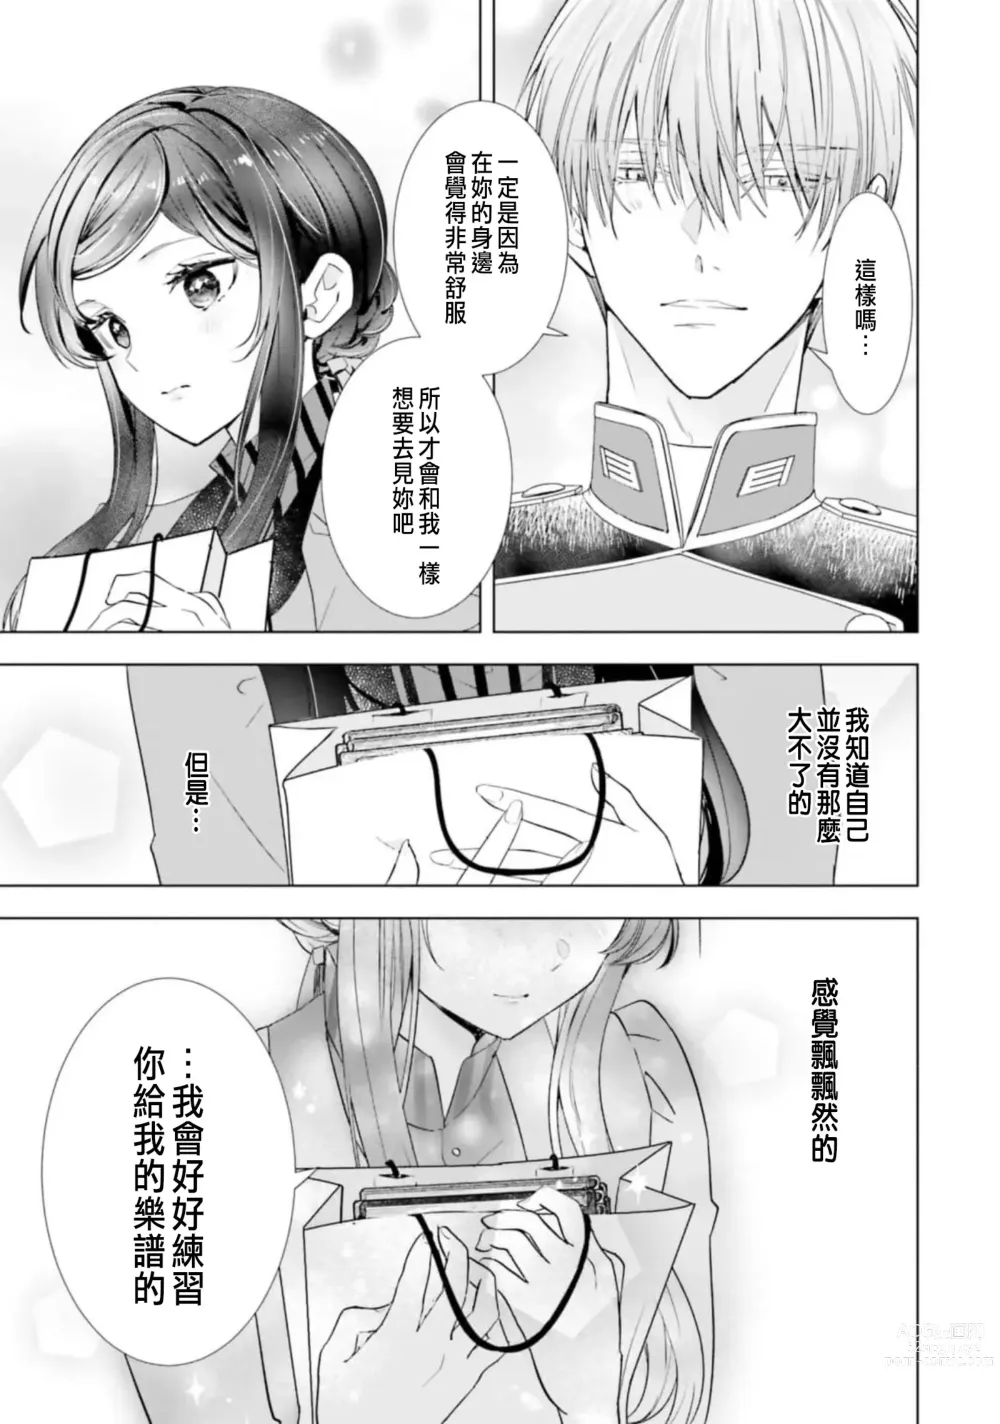 Page 155 of manga 總之先來做吧 1